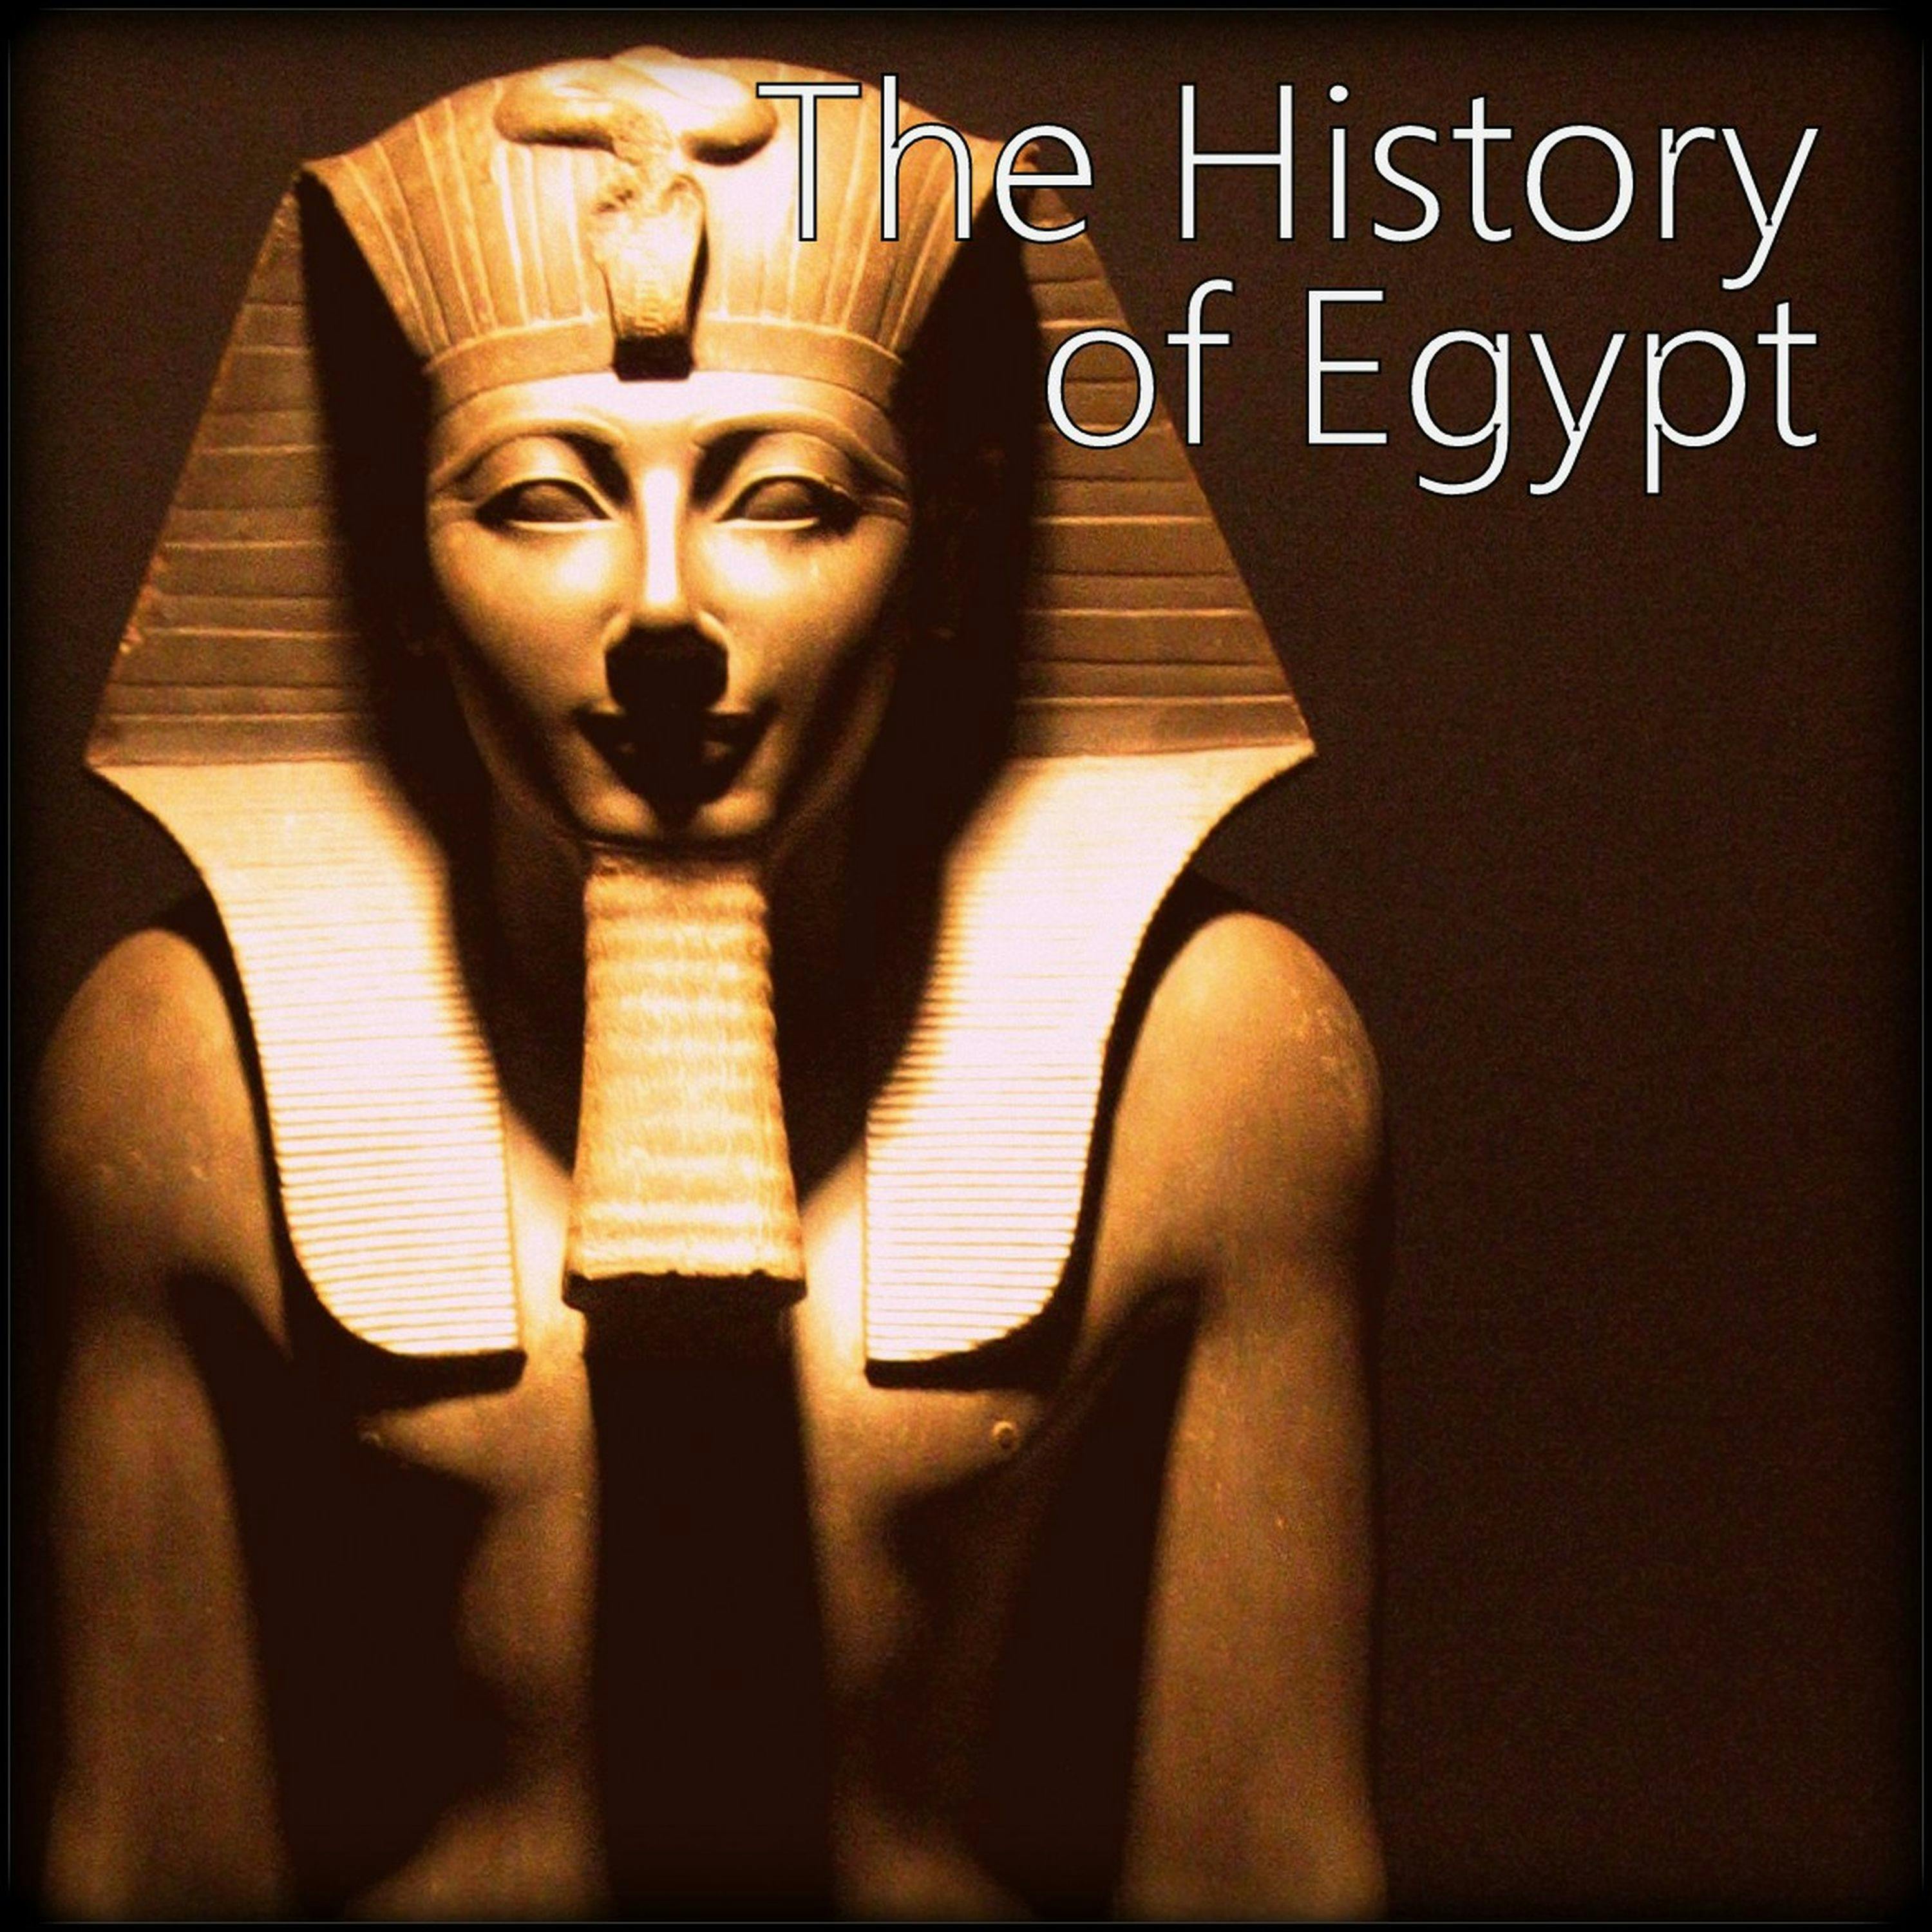 70: The Napoleon of Egypt